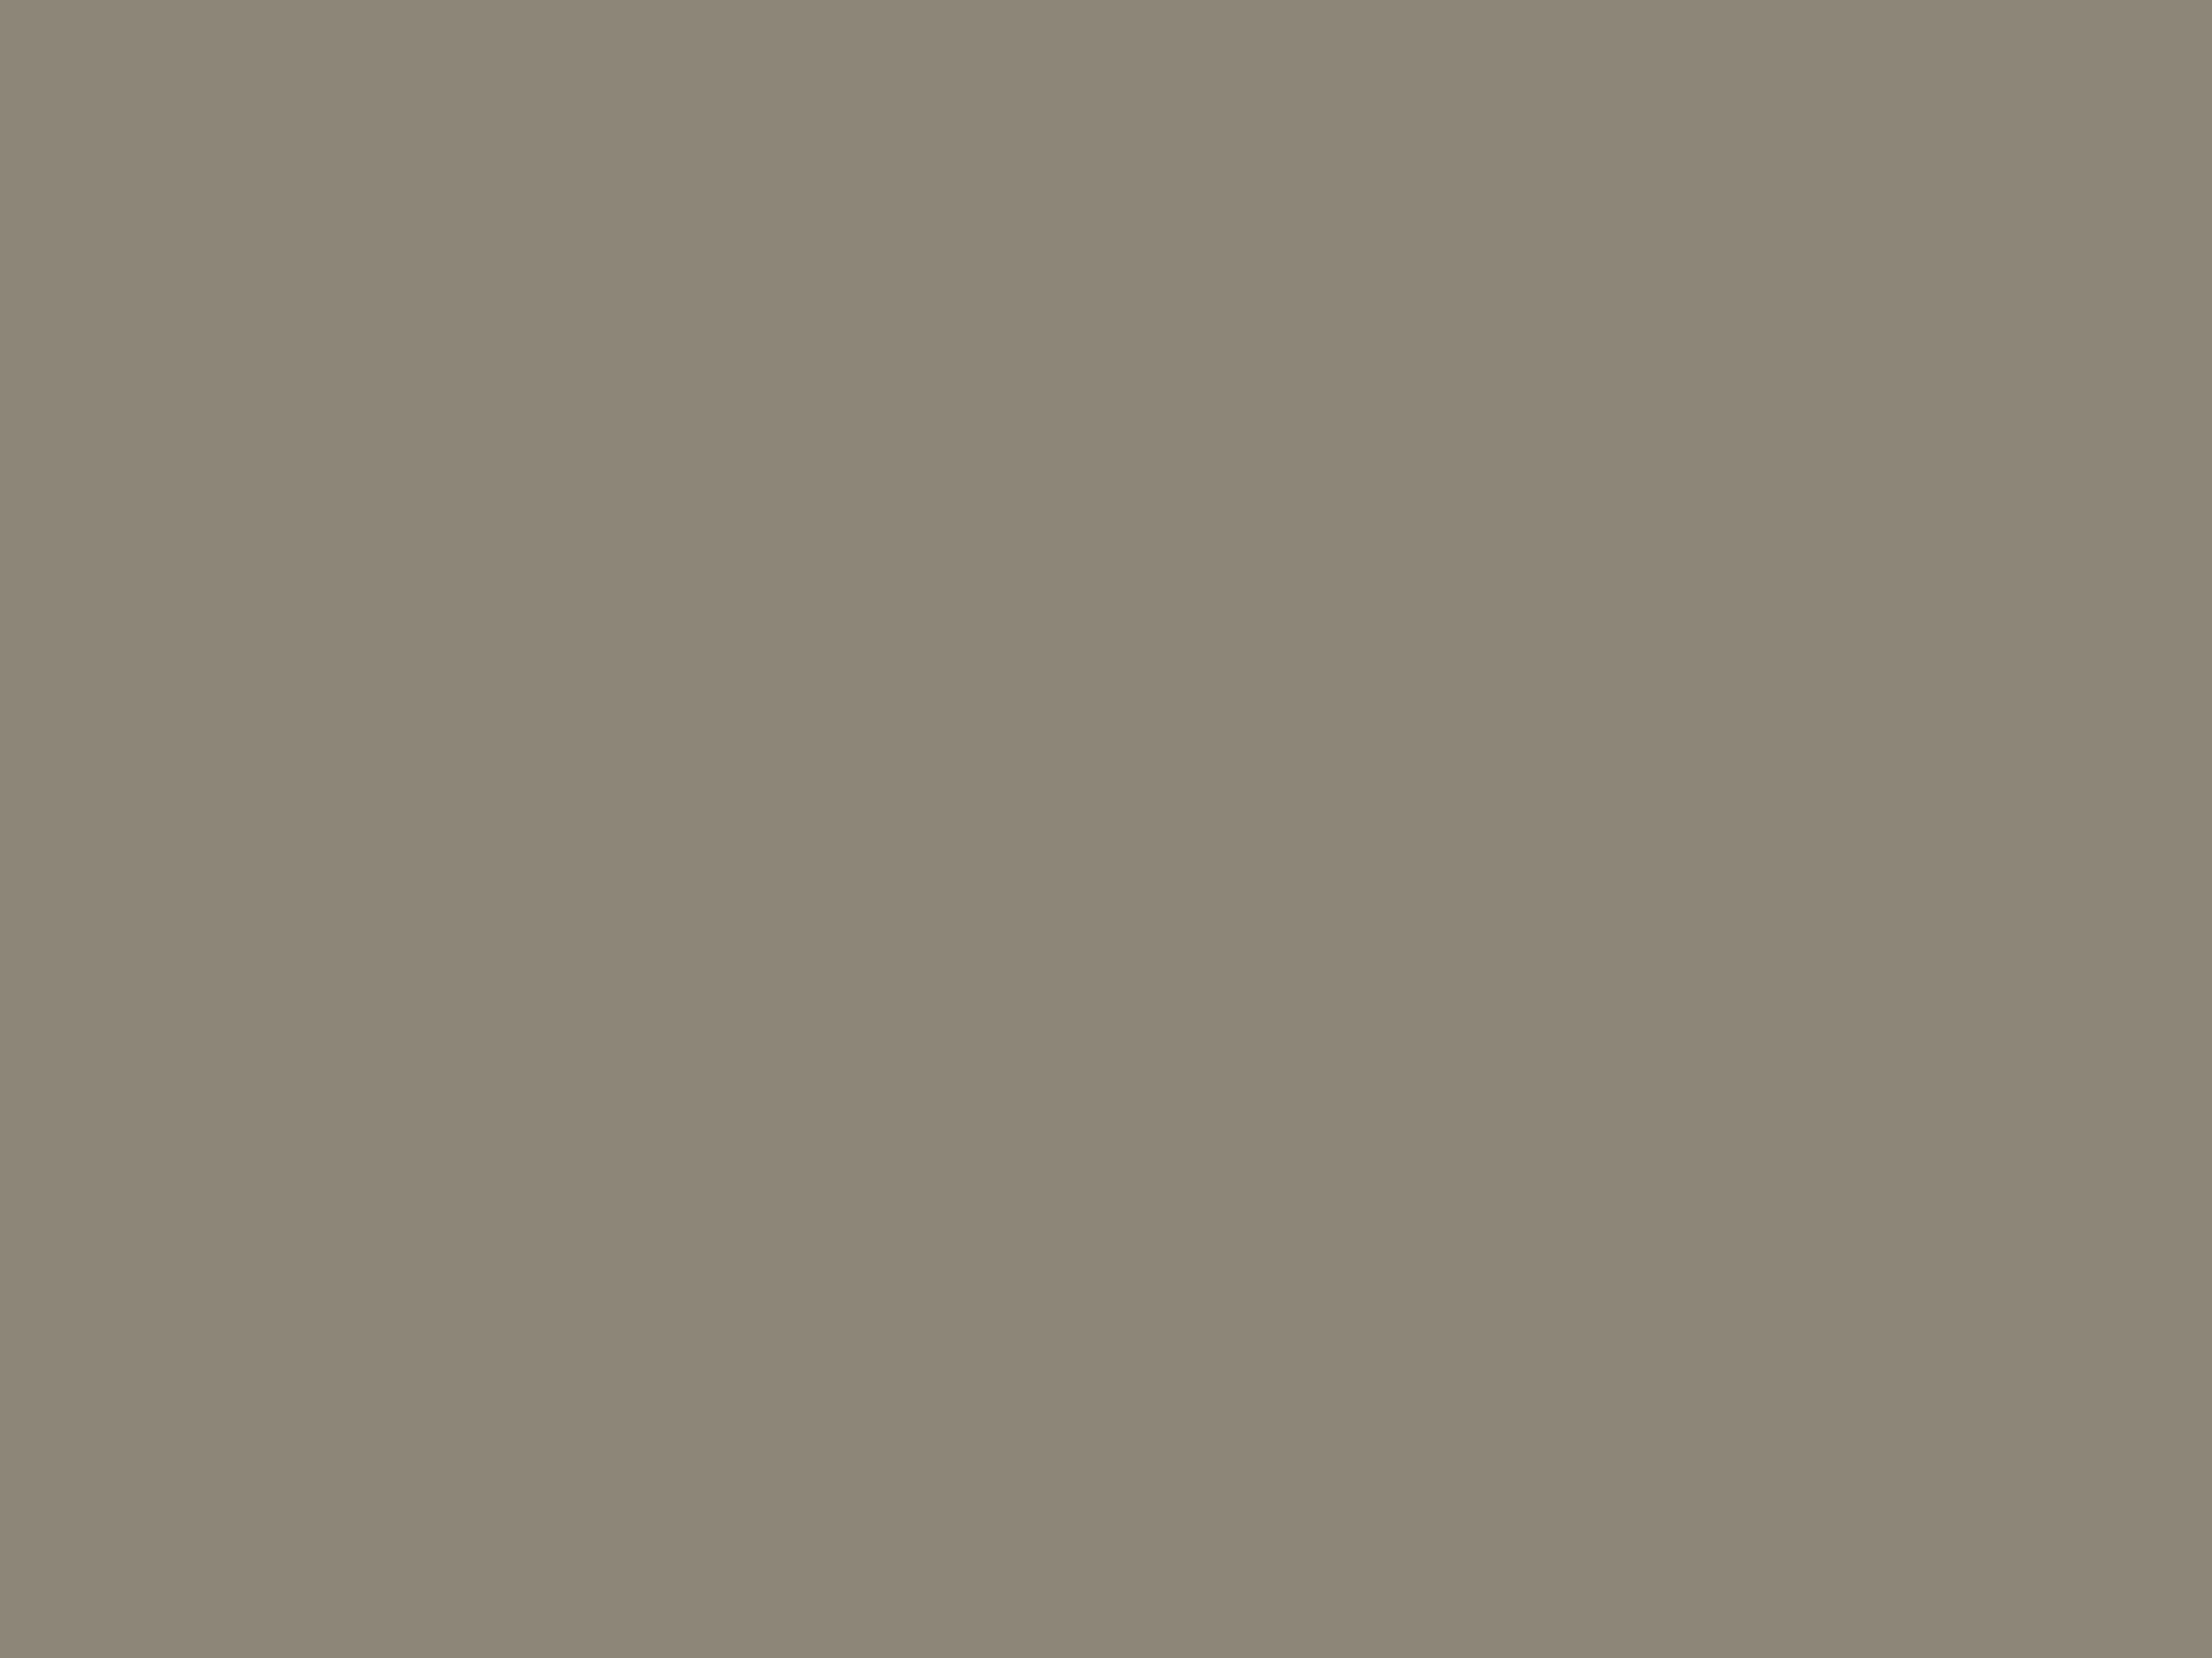 Николай Жуков. Последняя линия обороны. 1946. Студия военных художников им. М.Б. Грекова, Москва